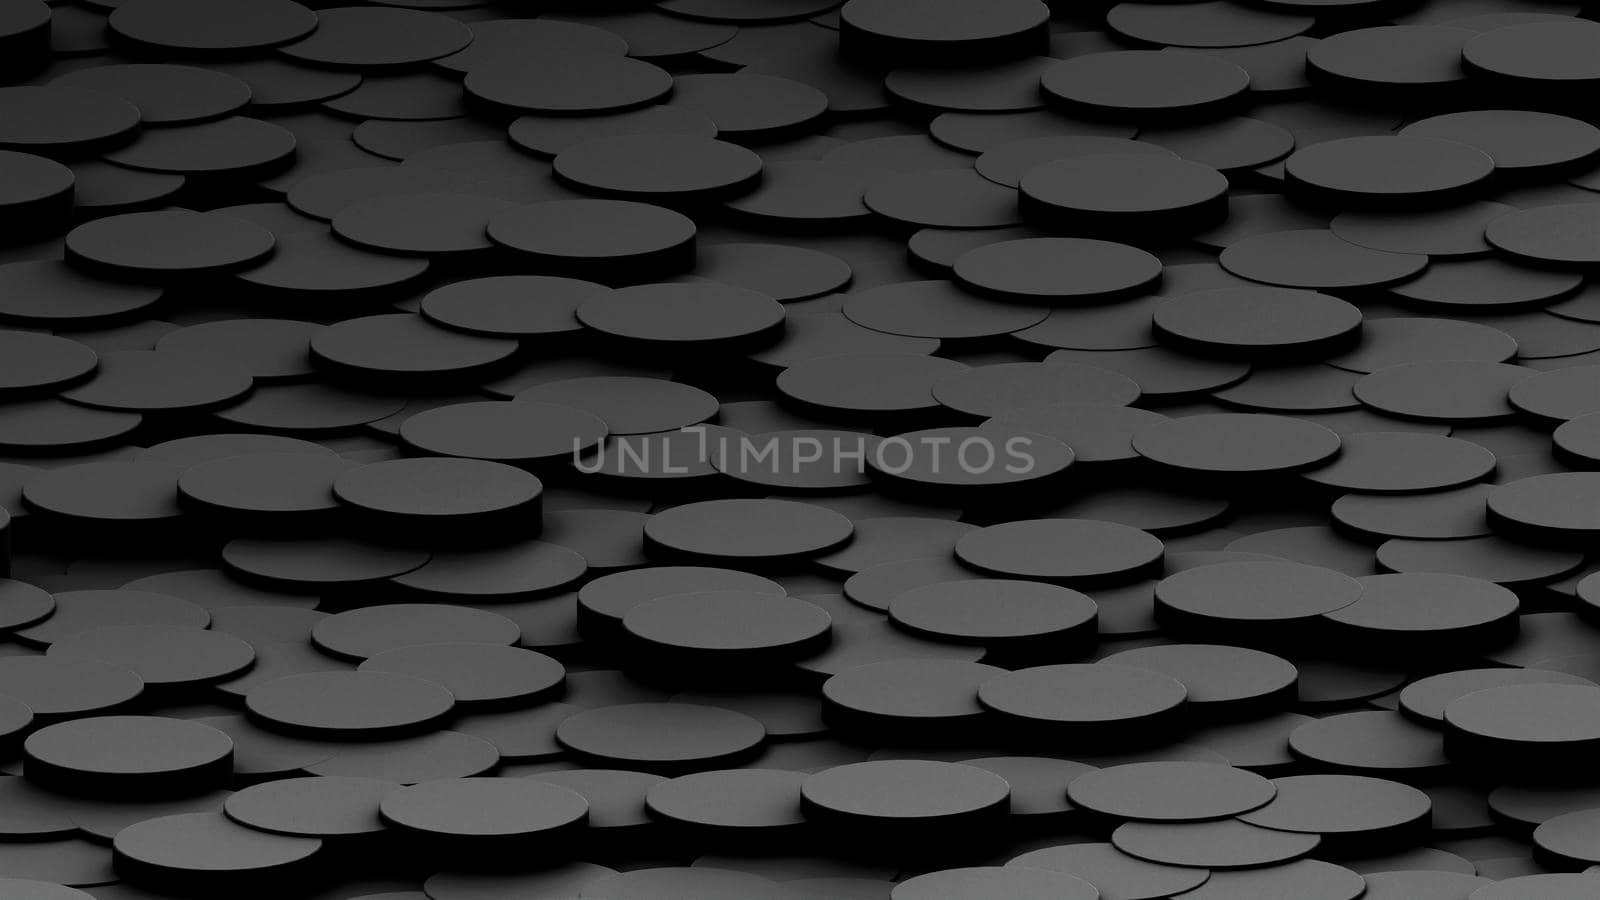 Dark cylinder wallpaper or background.3d illustration